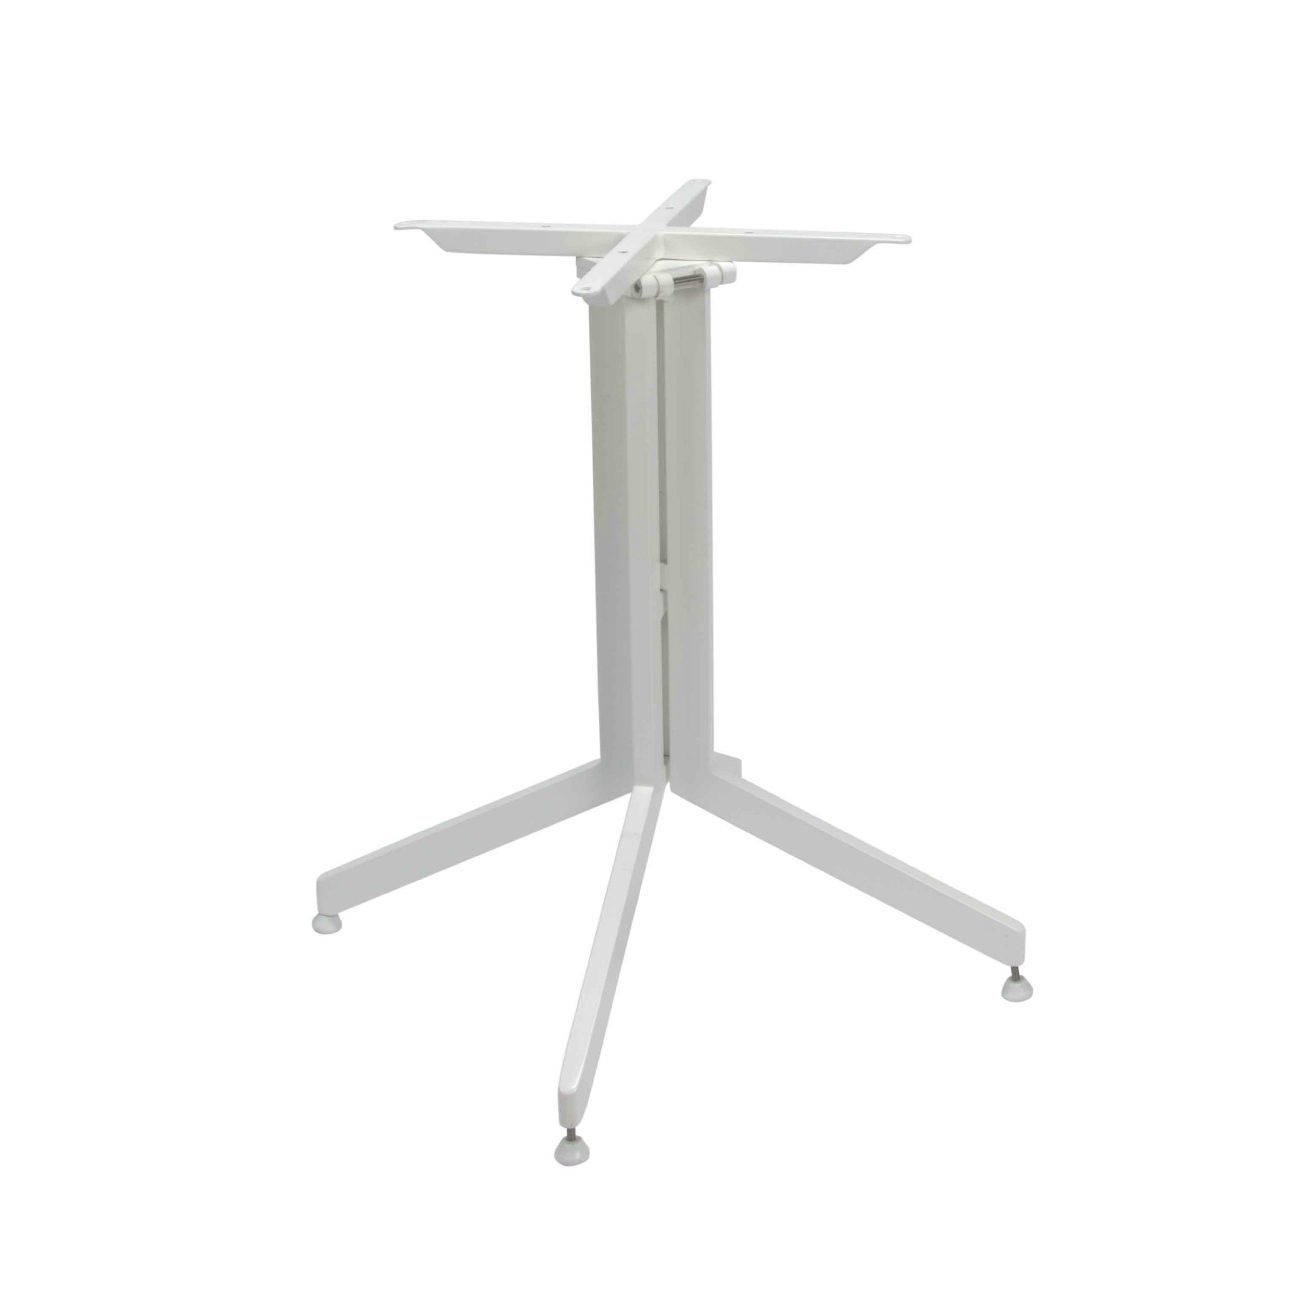 Stern Tischgestell für Bistrotisch, Aluminium weiß